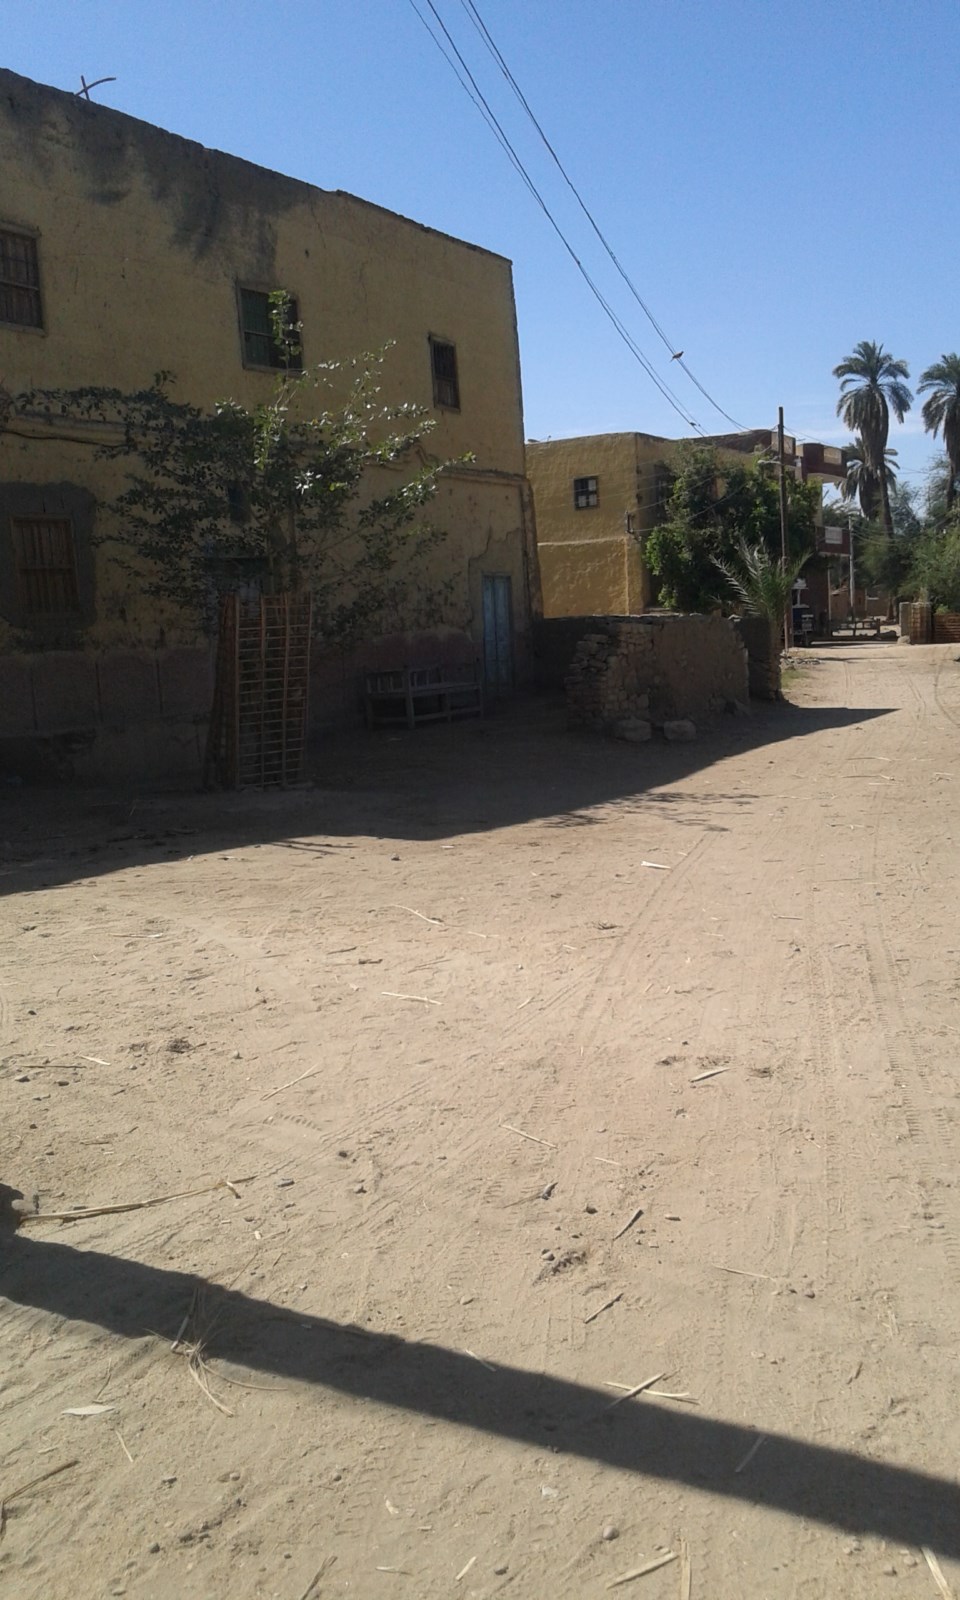 شوارع قرية خور أبو علي الجارى تطويرها ضمن مبادرة حياة كريمة (3)